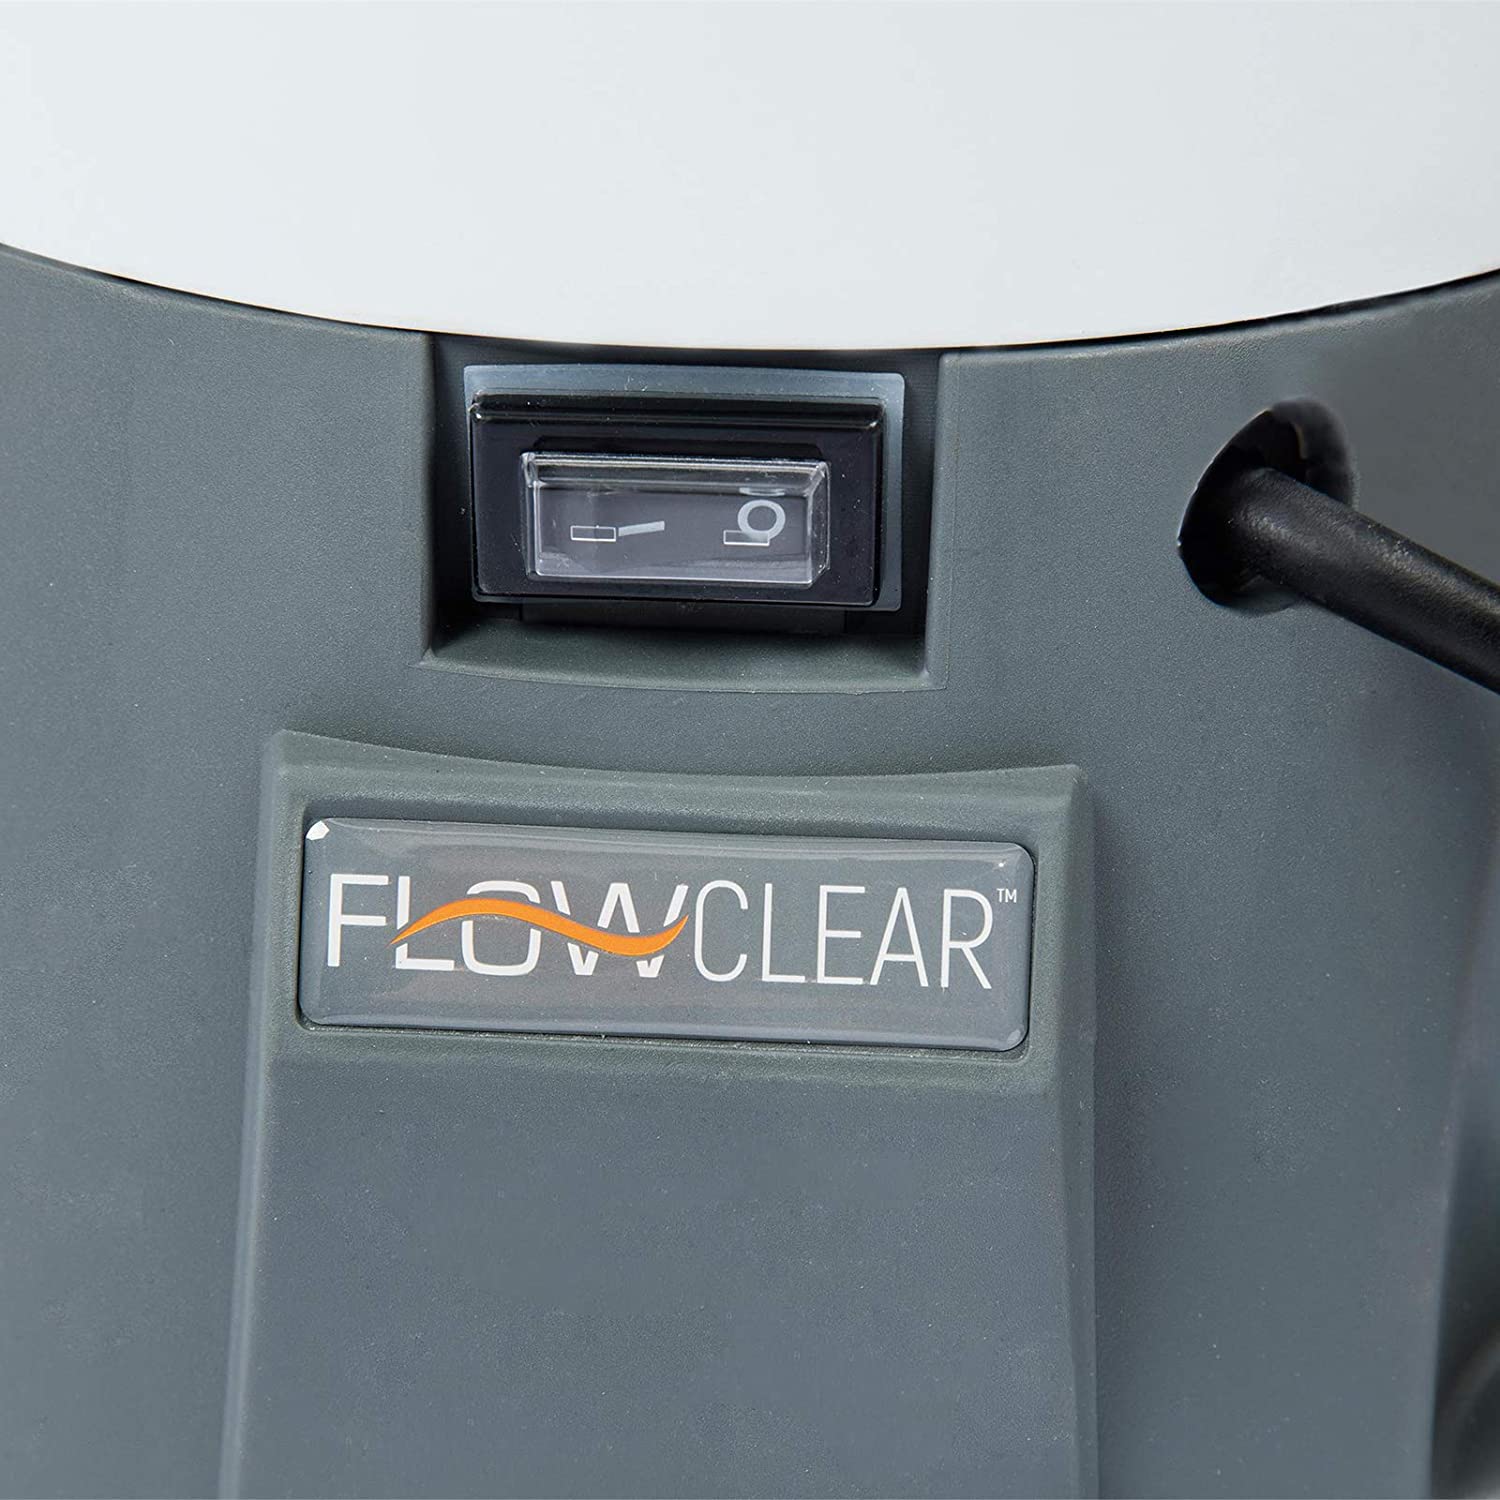 مضخة تصفية الرمل Flowclear من Bestway لحمامات السباحة الخارجية ، بسعة 3028 لتر / ساعة